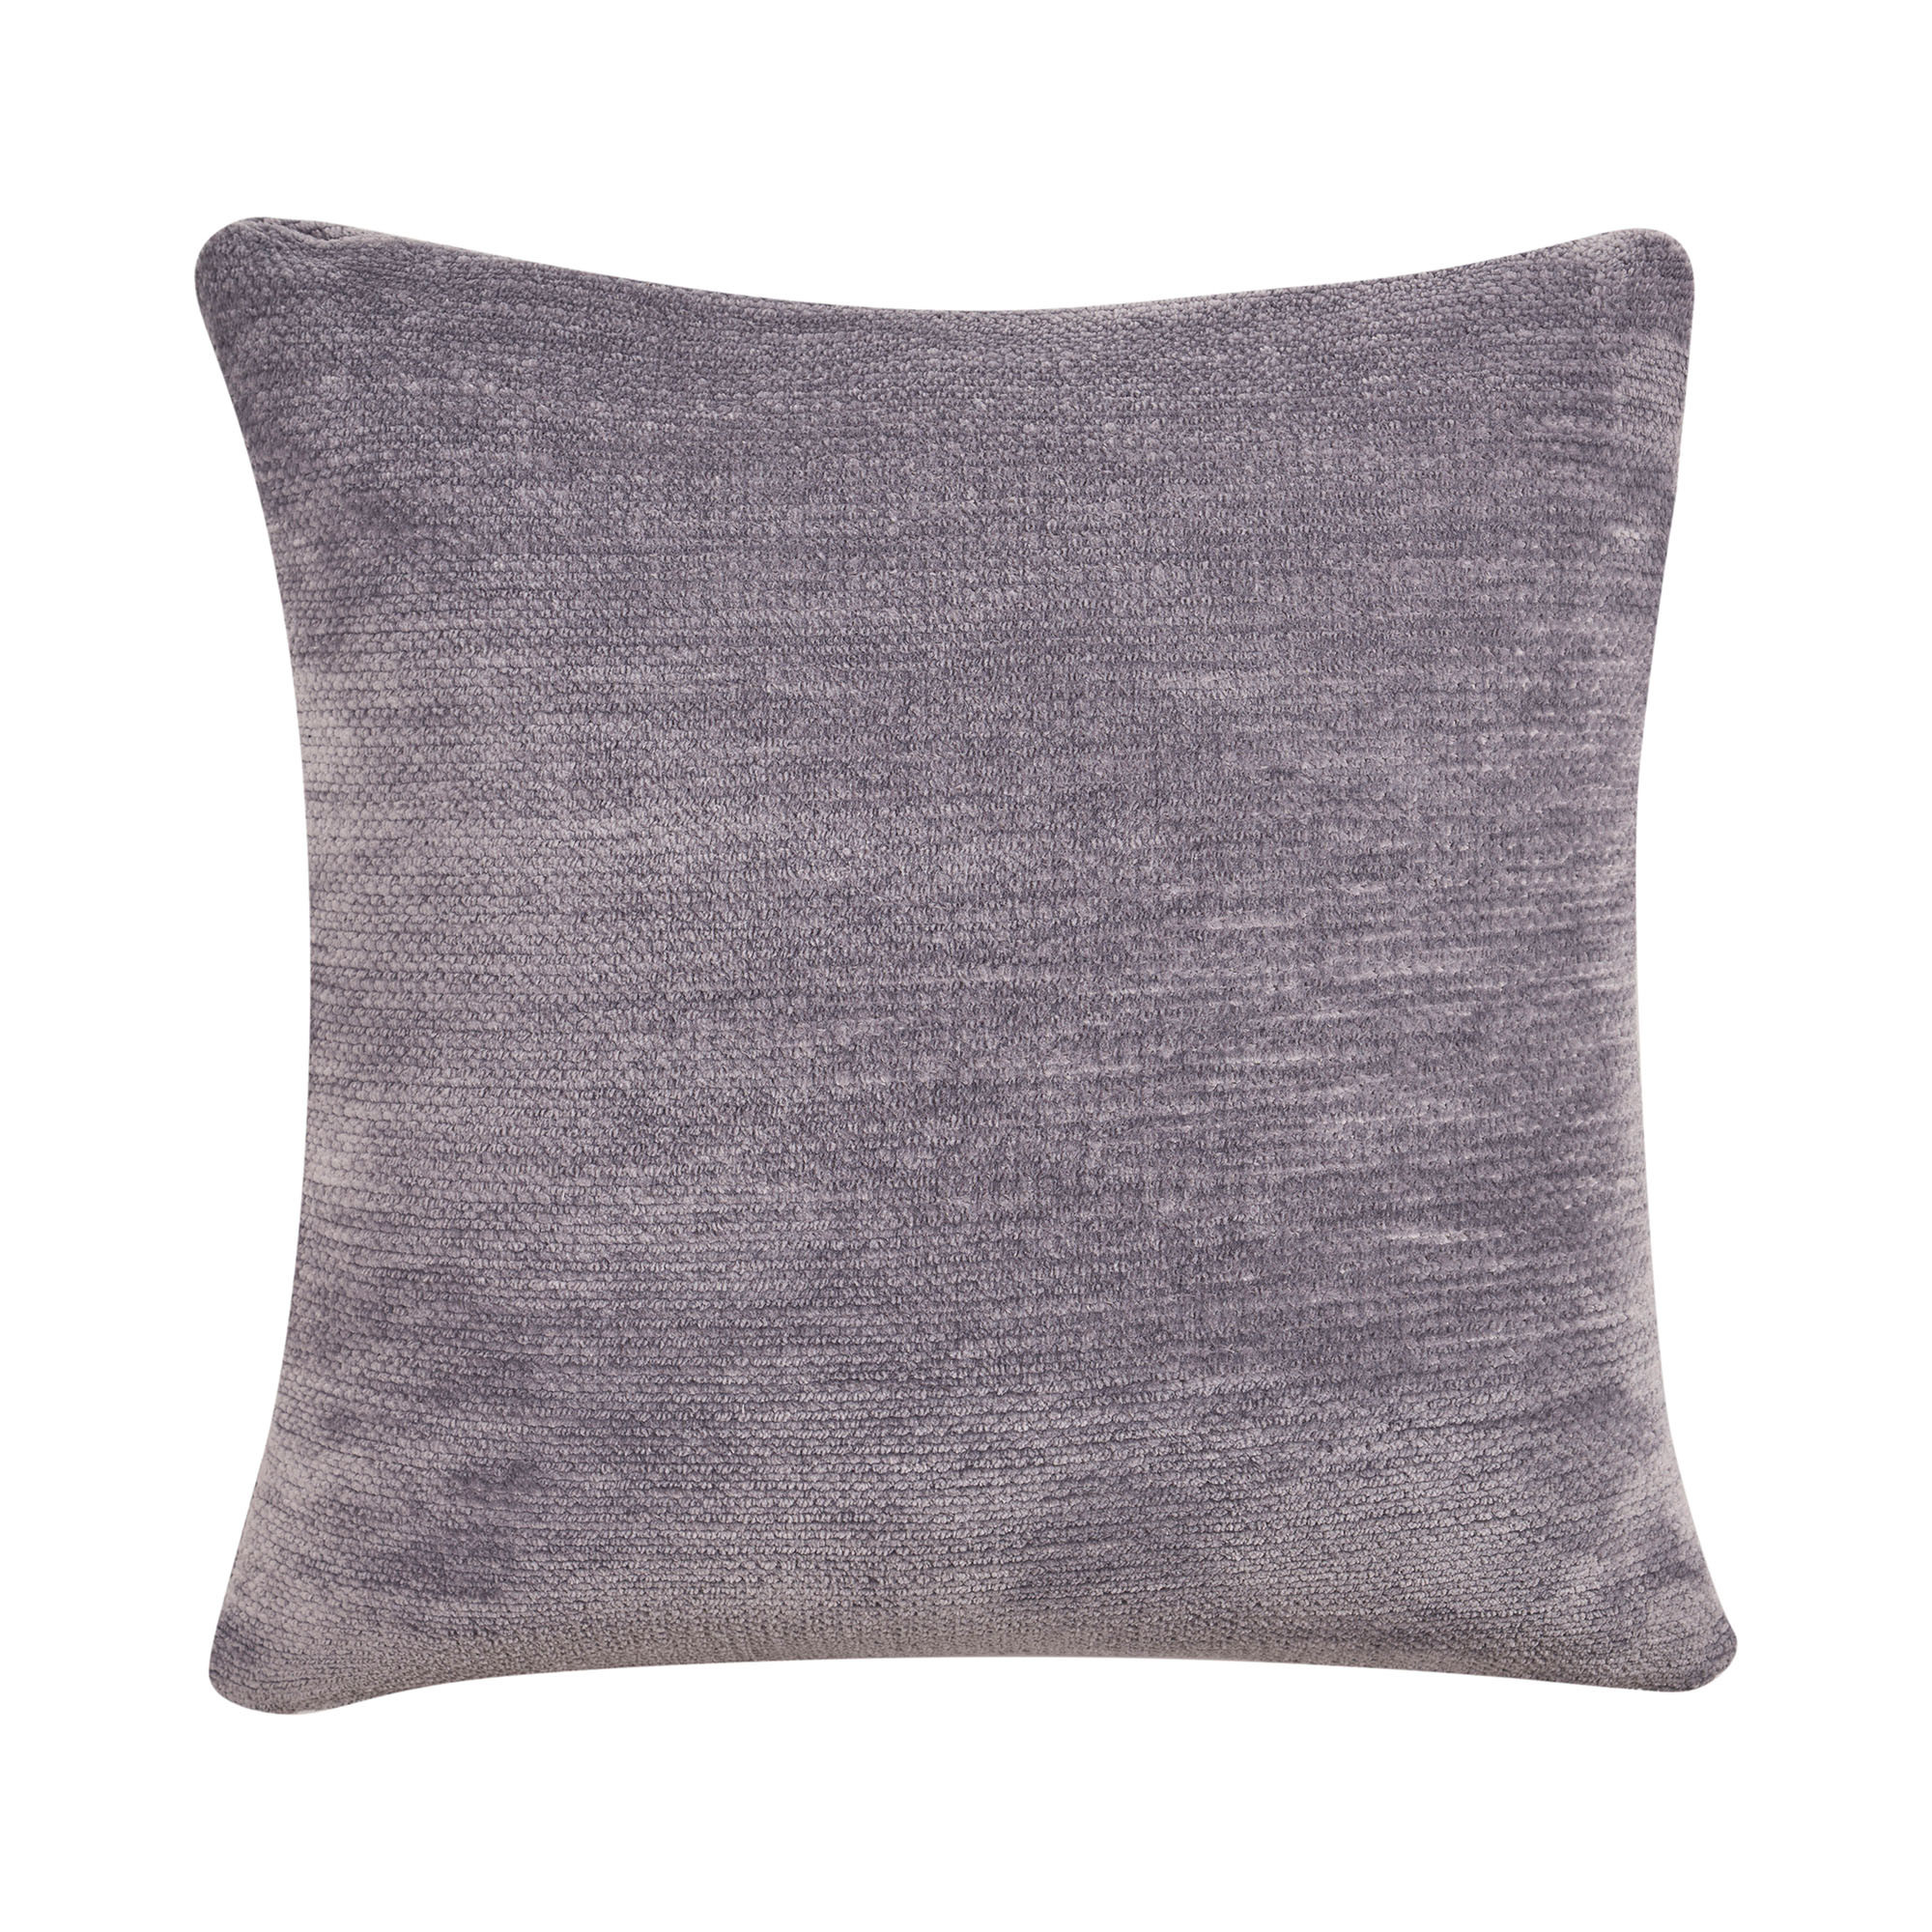 20" X 20" Gray Chenille Zippered Pillow-535253-1